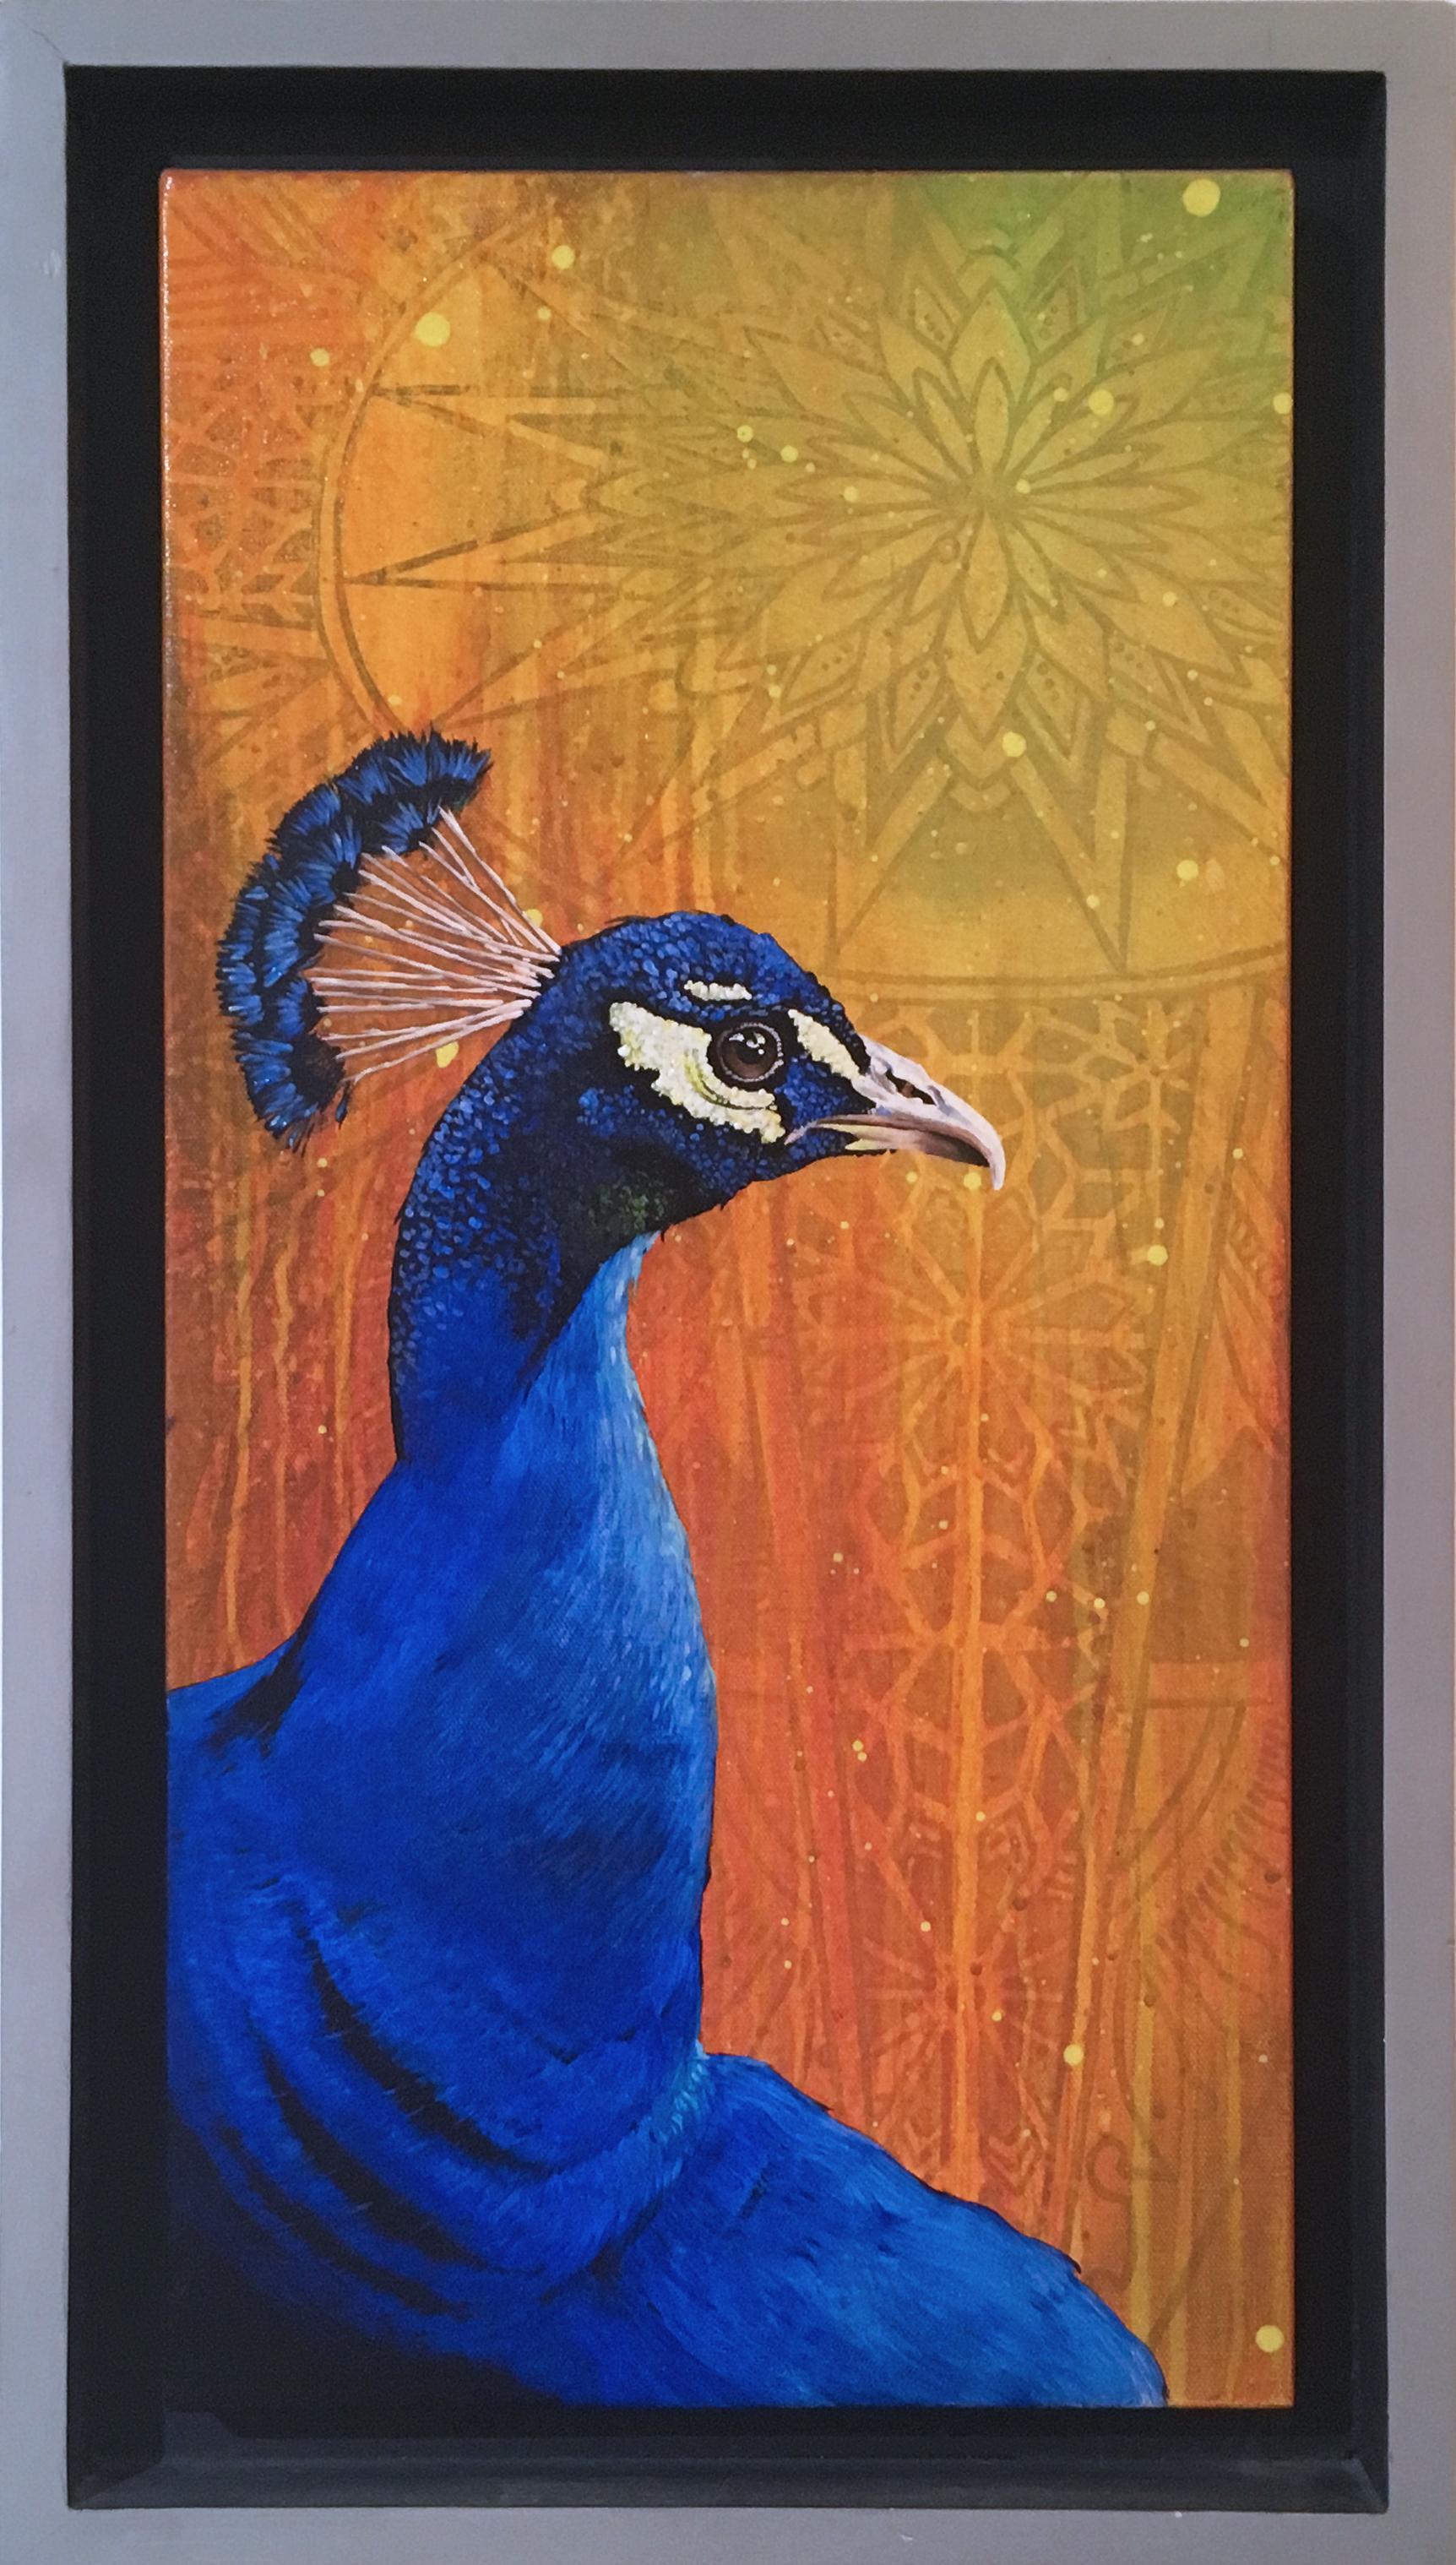 Peacock, by street art legend TDEE, custom framed, yellow, orange, blue, pattern - Brown Animal Painting by Ed Morris